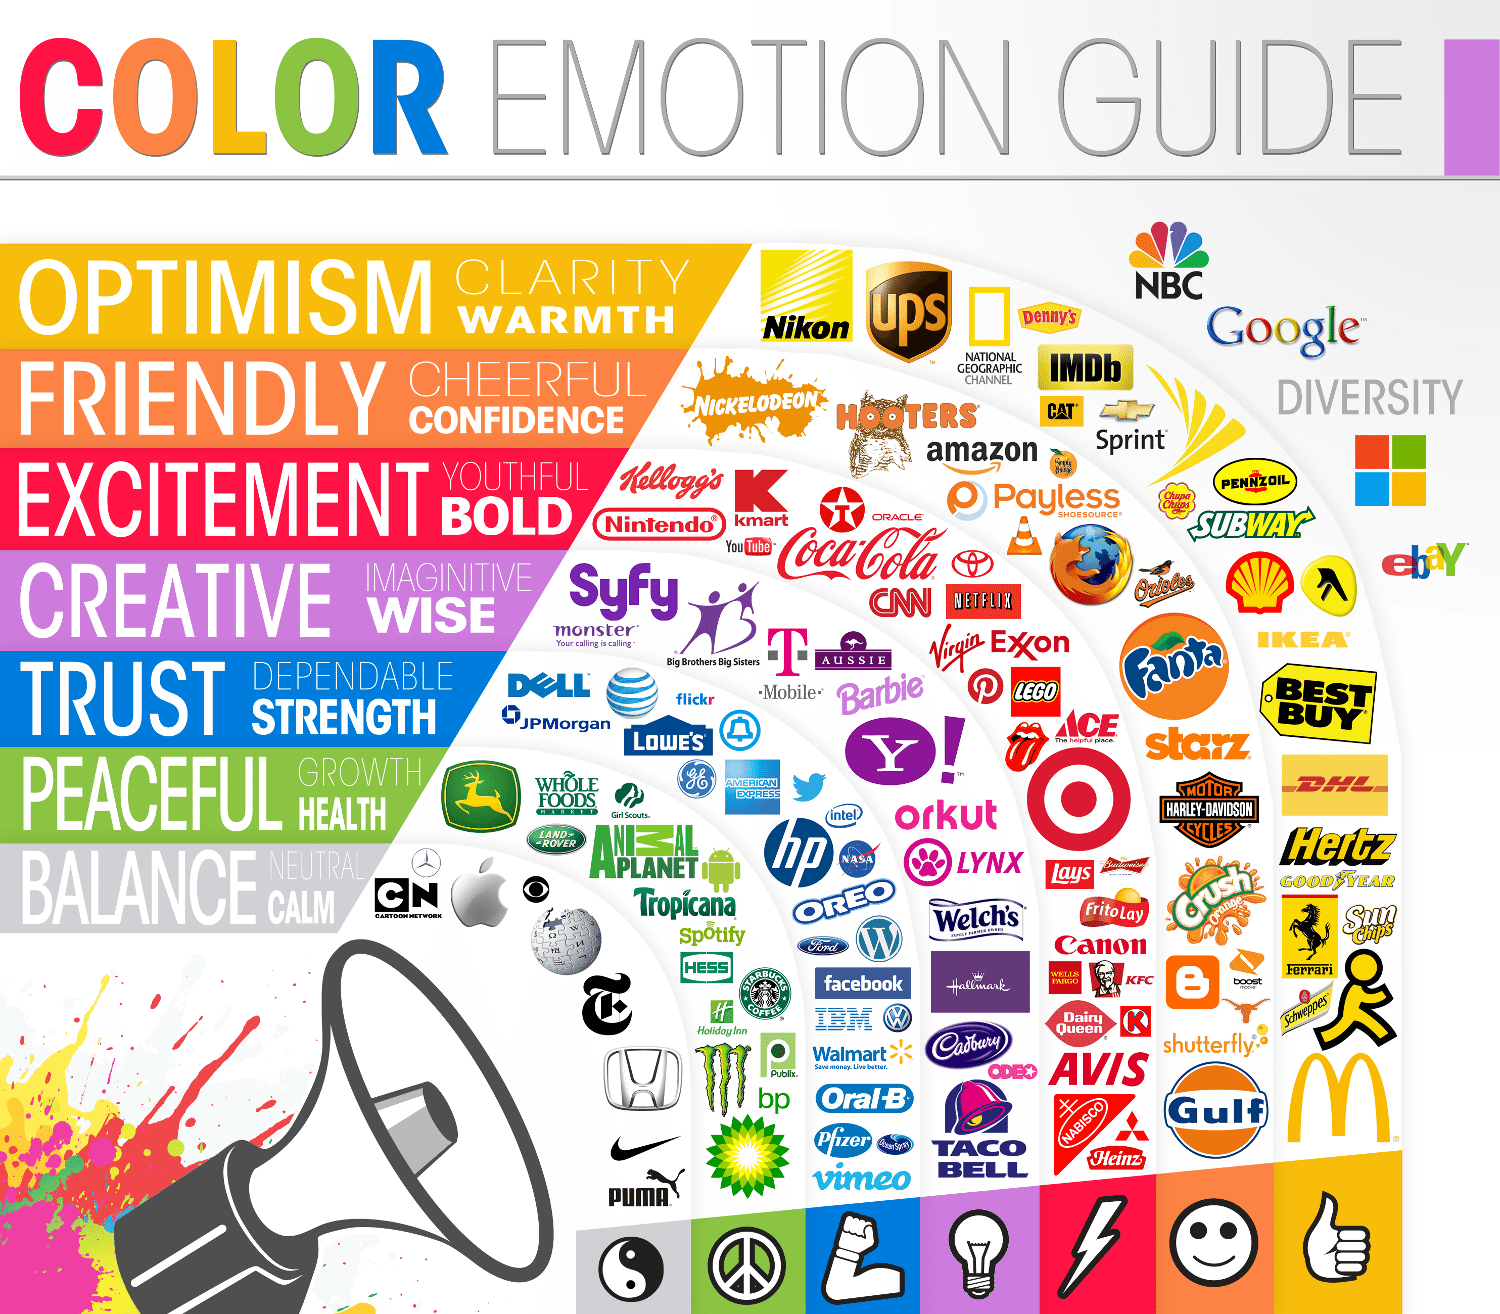 Gids voor emoties bij kleuren voor grote bedrijven